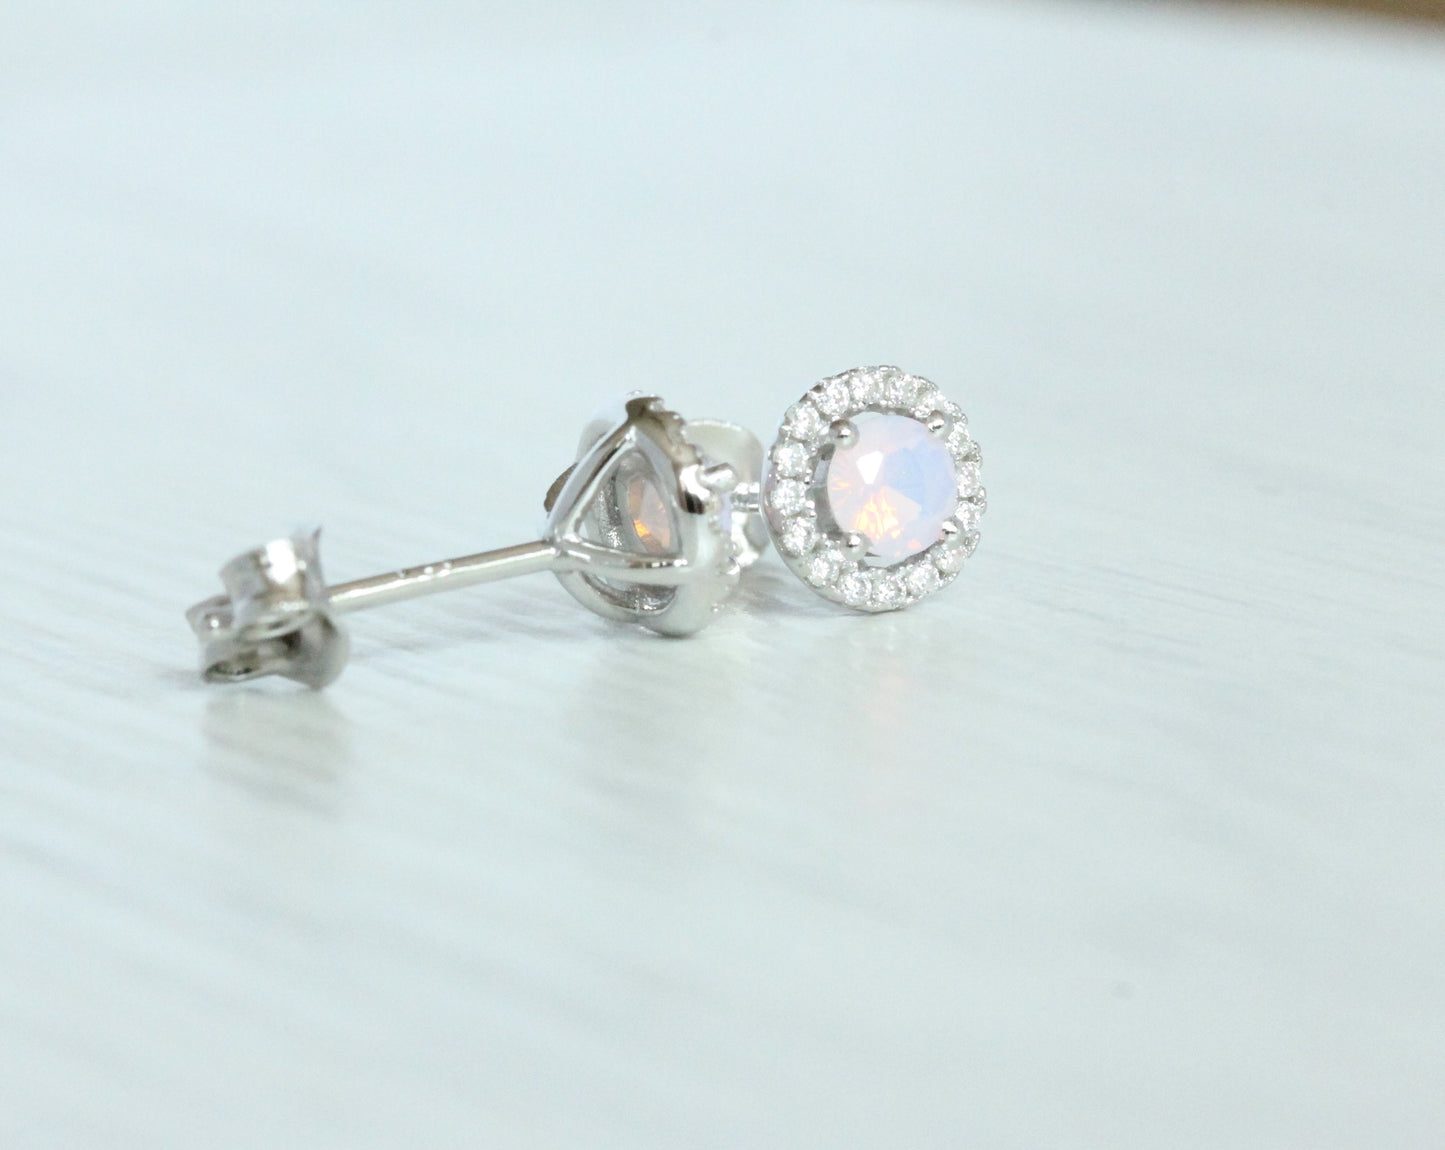 Opal & Genuine Moissanite Halo stud earrings in Sterling silver